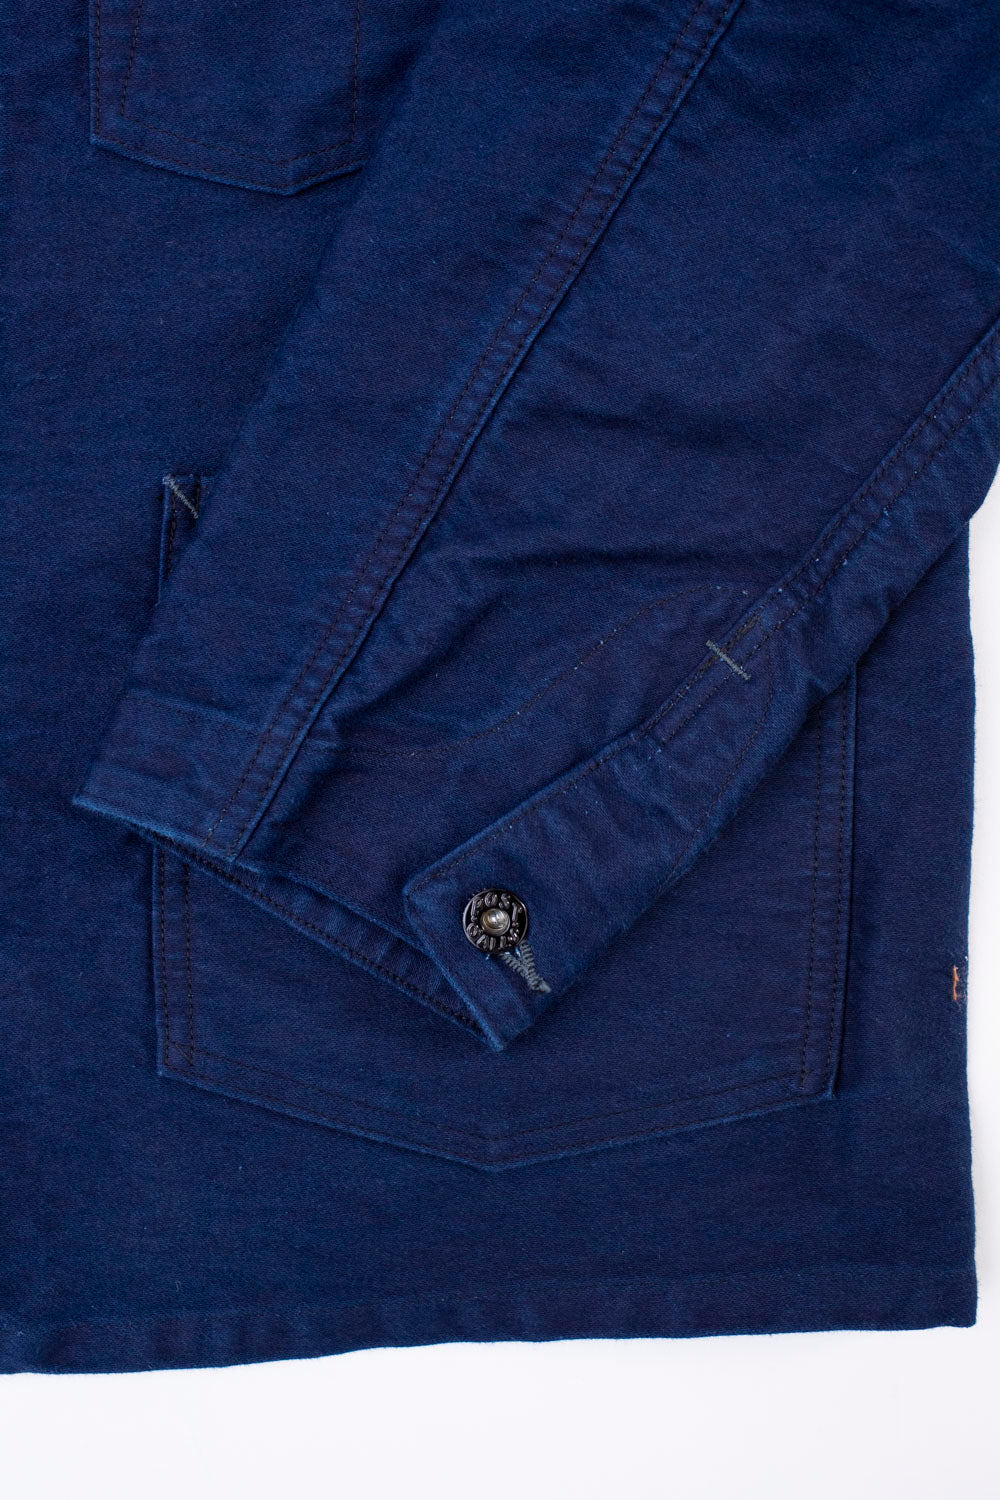 1101-MI - No. 1 Jacket Vintage Moleskin - Indigo